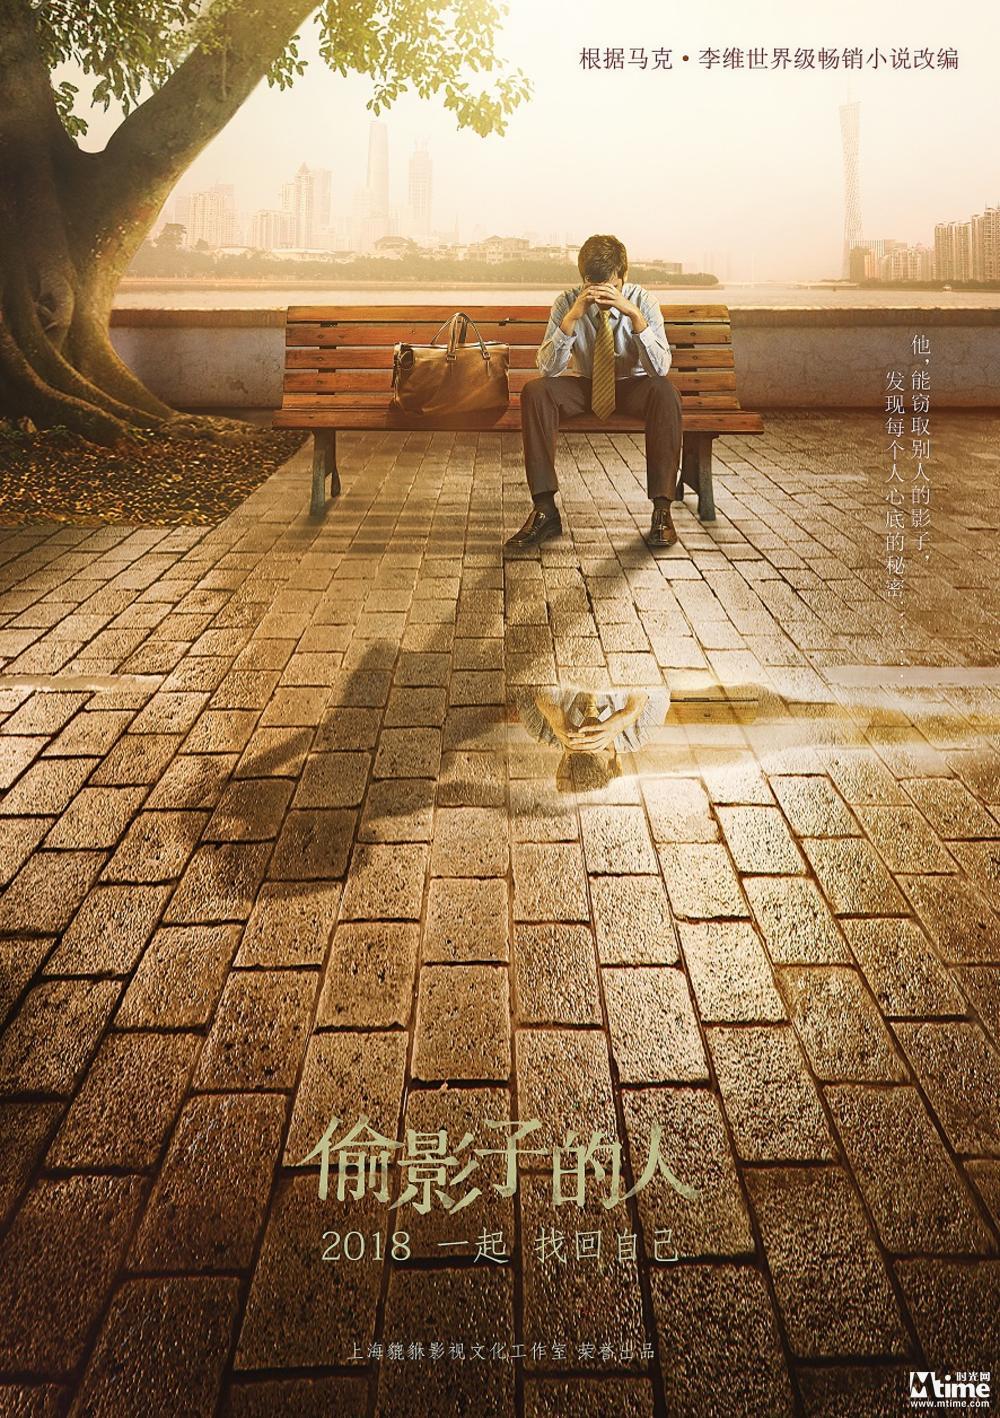 法国小说《偷影子的人》将拍中国版电影 首曝概念海报(图1)